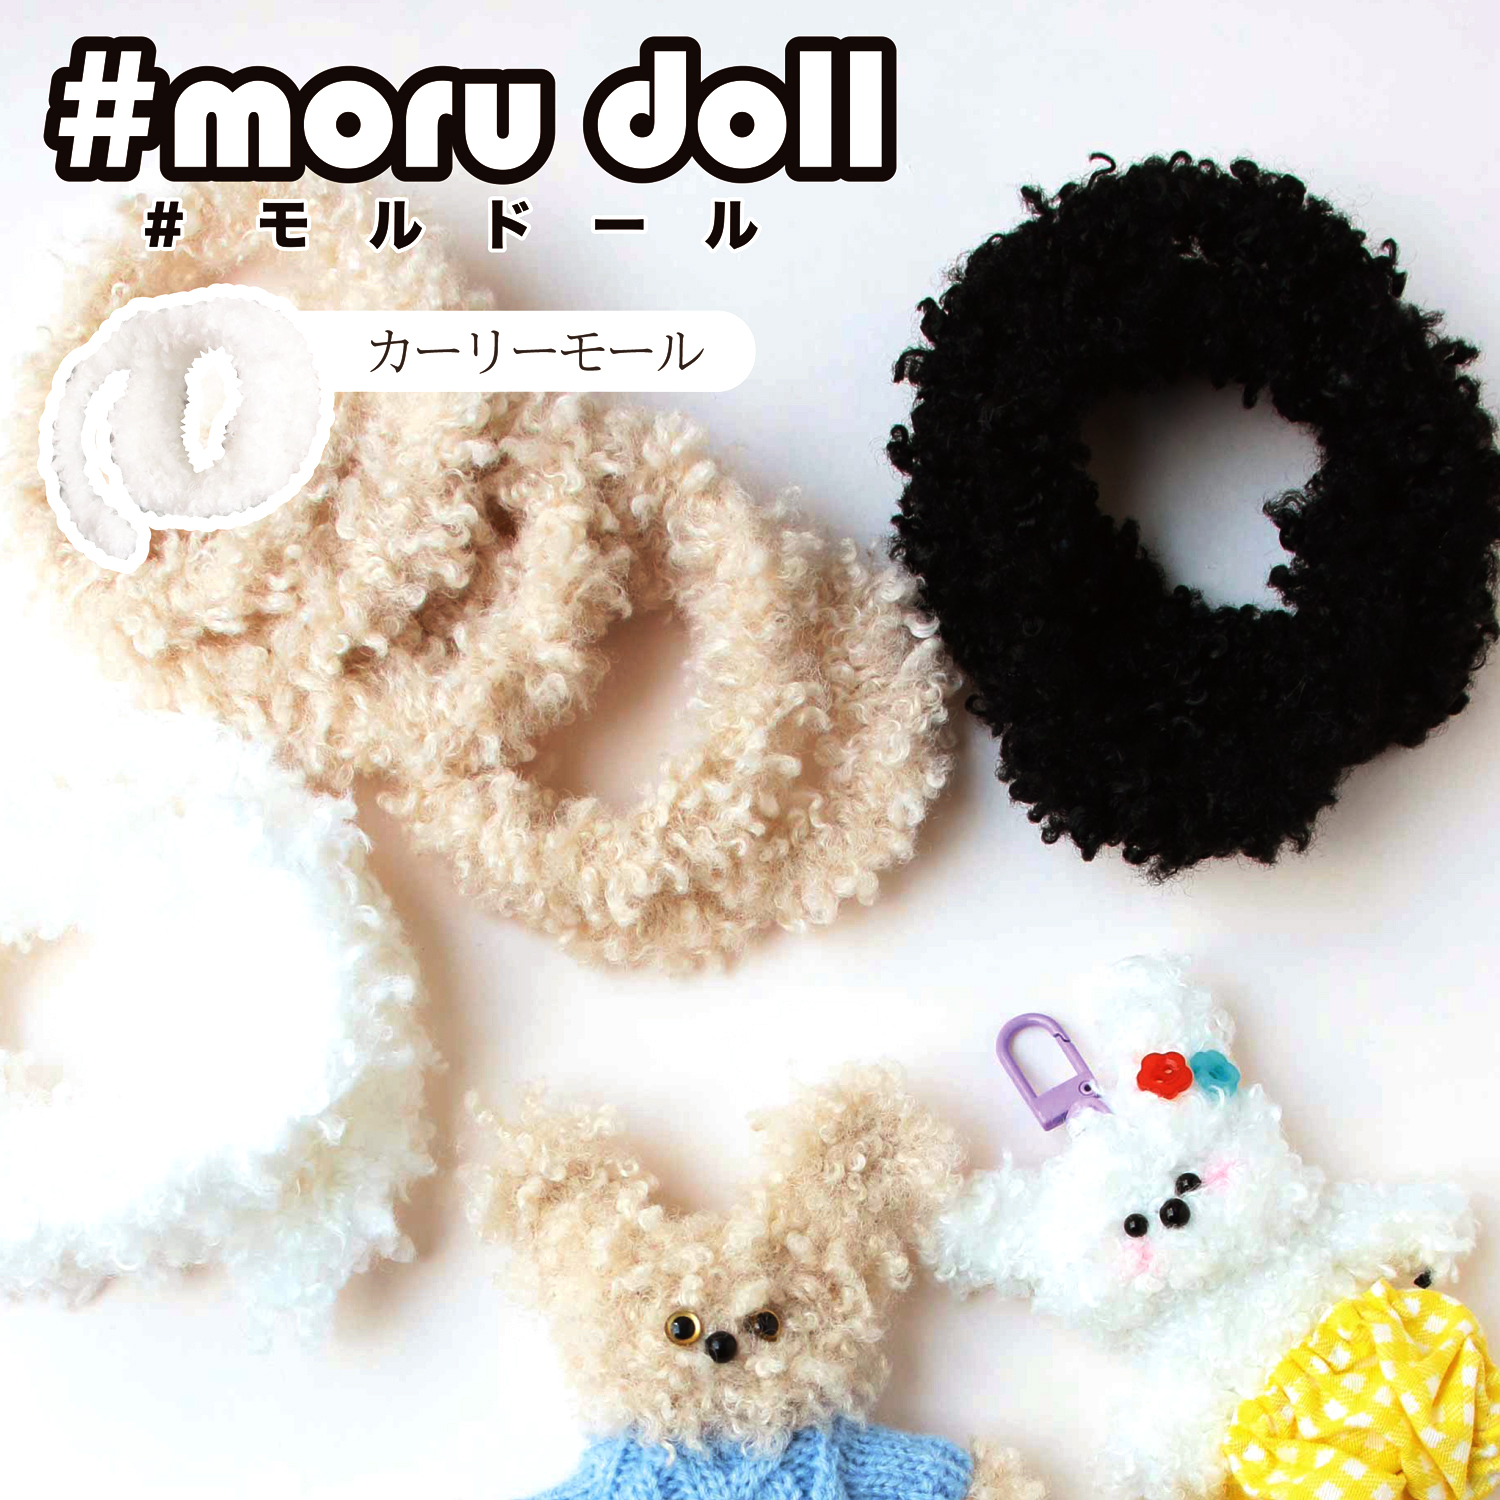 MOL モール人形 モールドール ボディ用モール カーリーモール (袋)